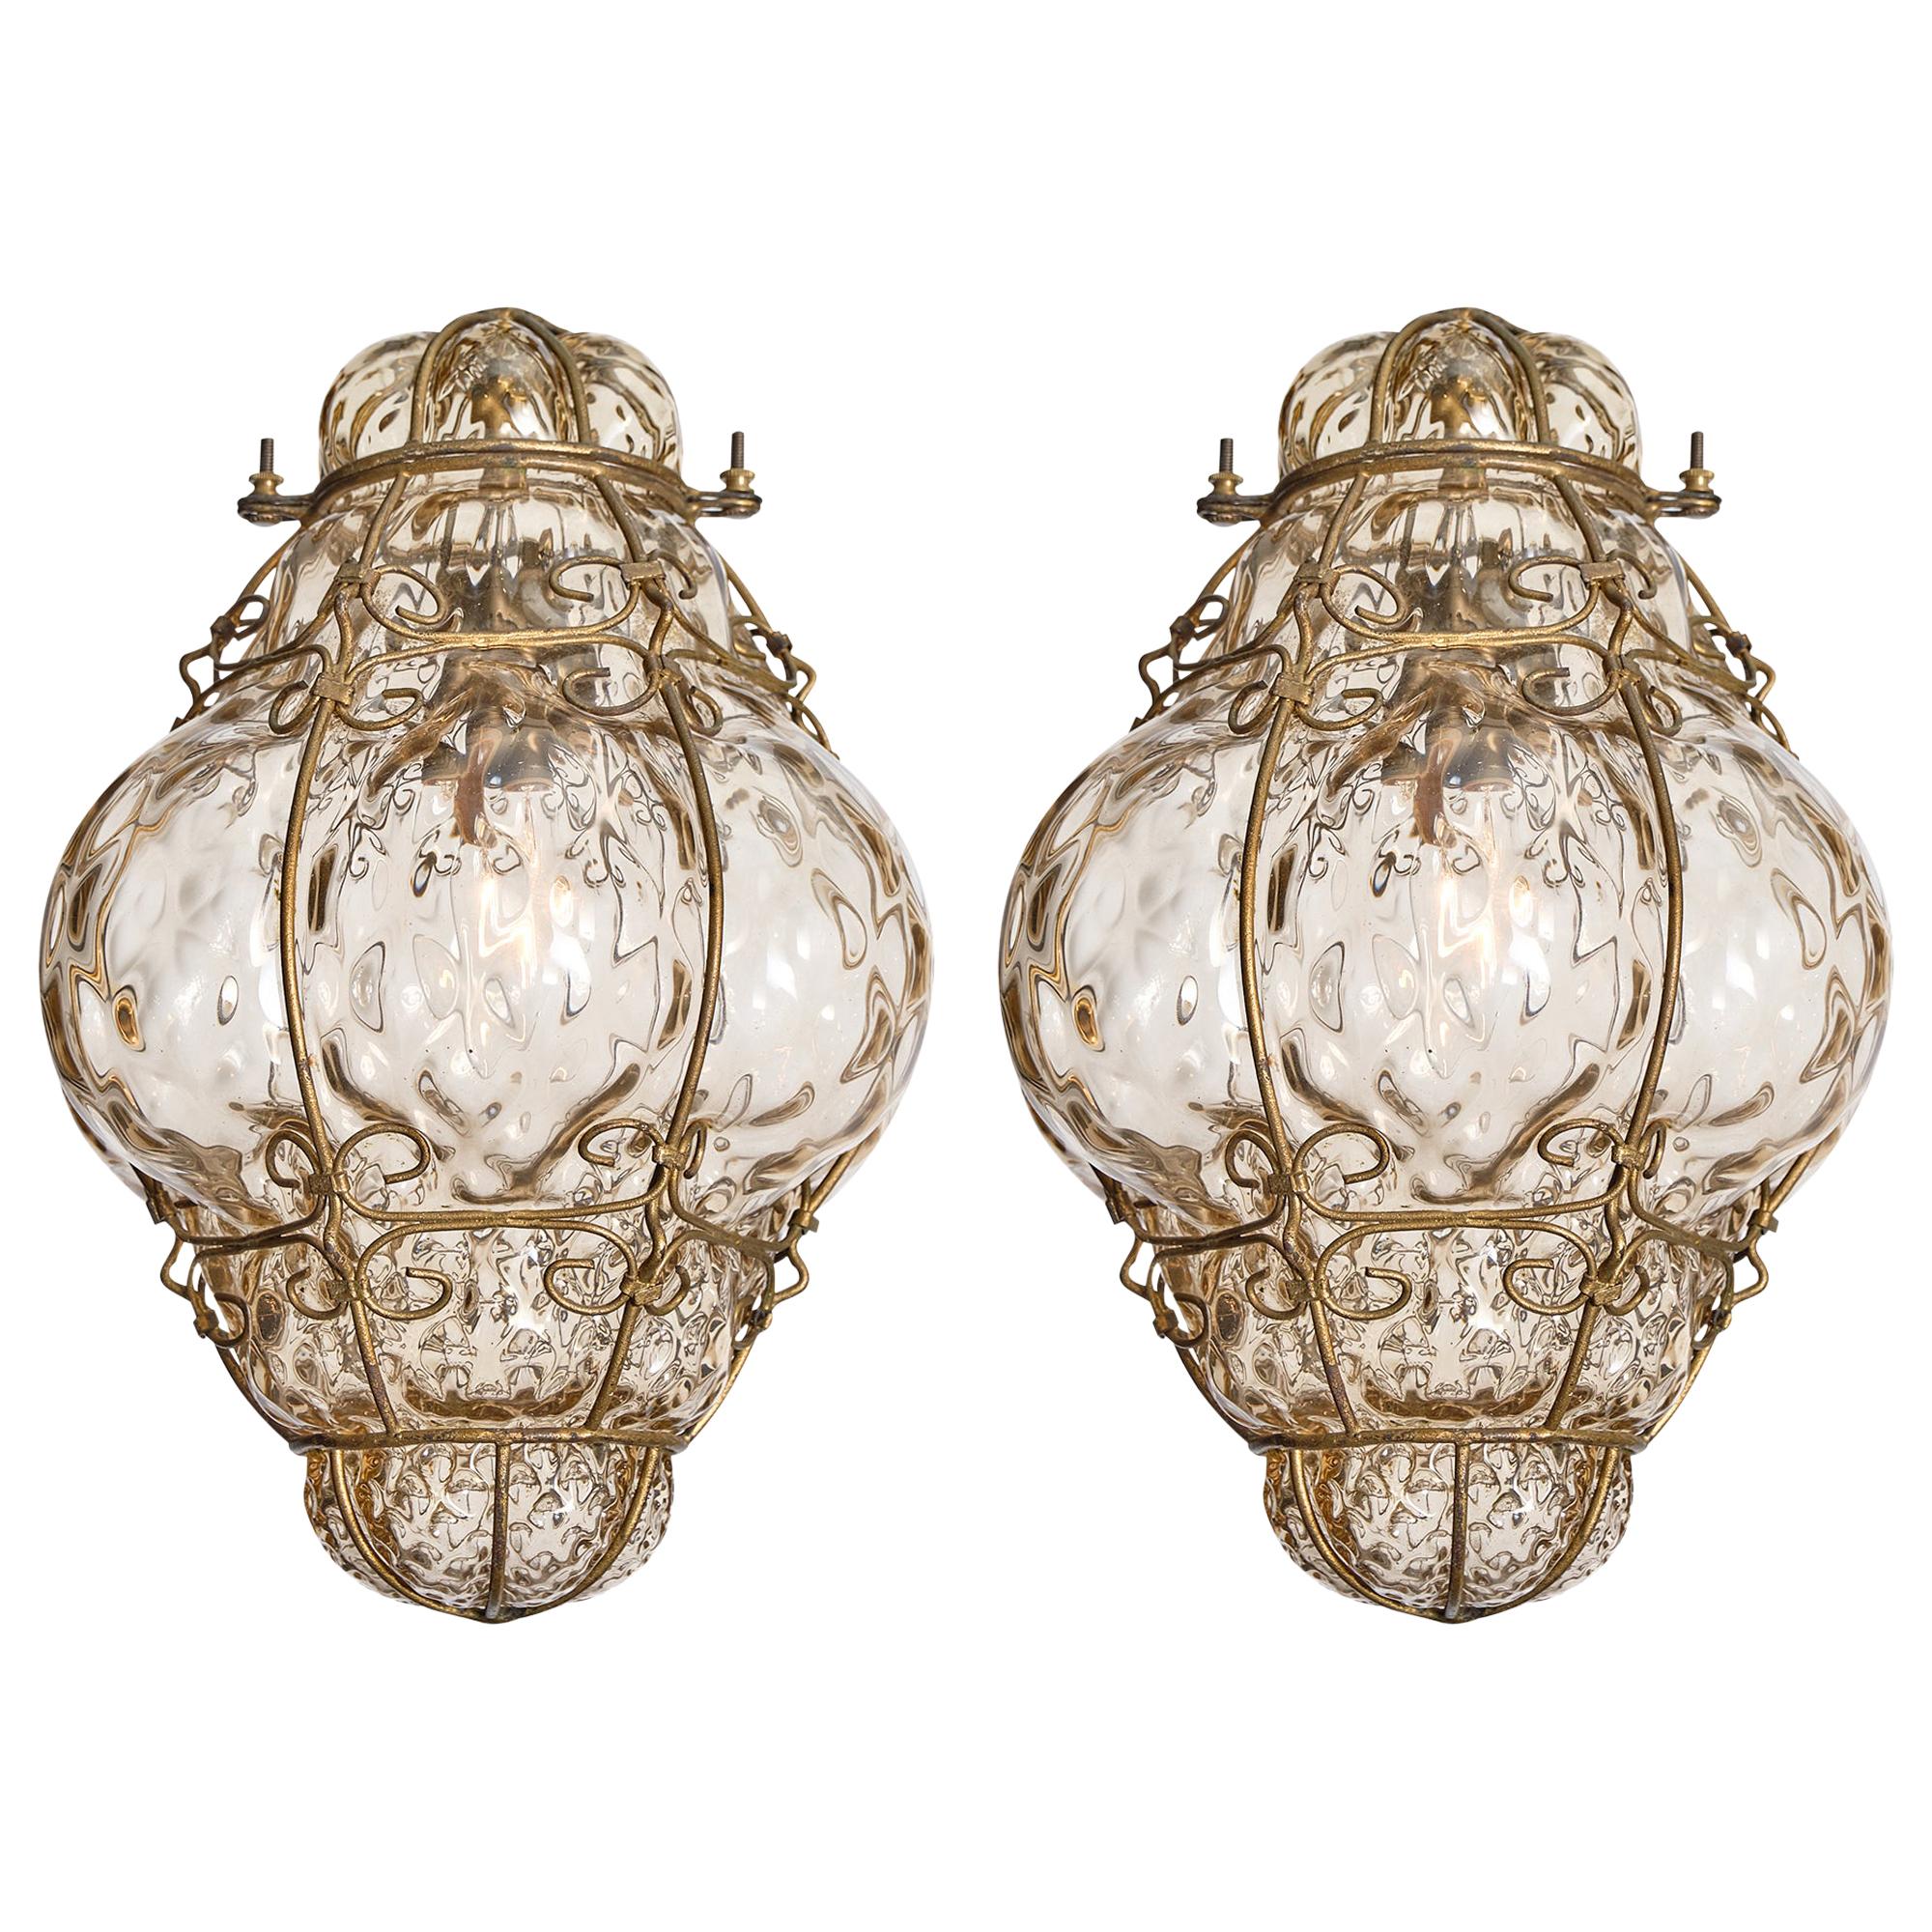 Pair of Vintage Venetian Lanterns